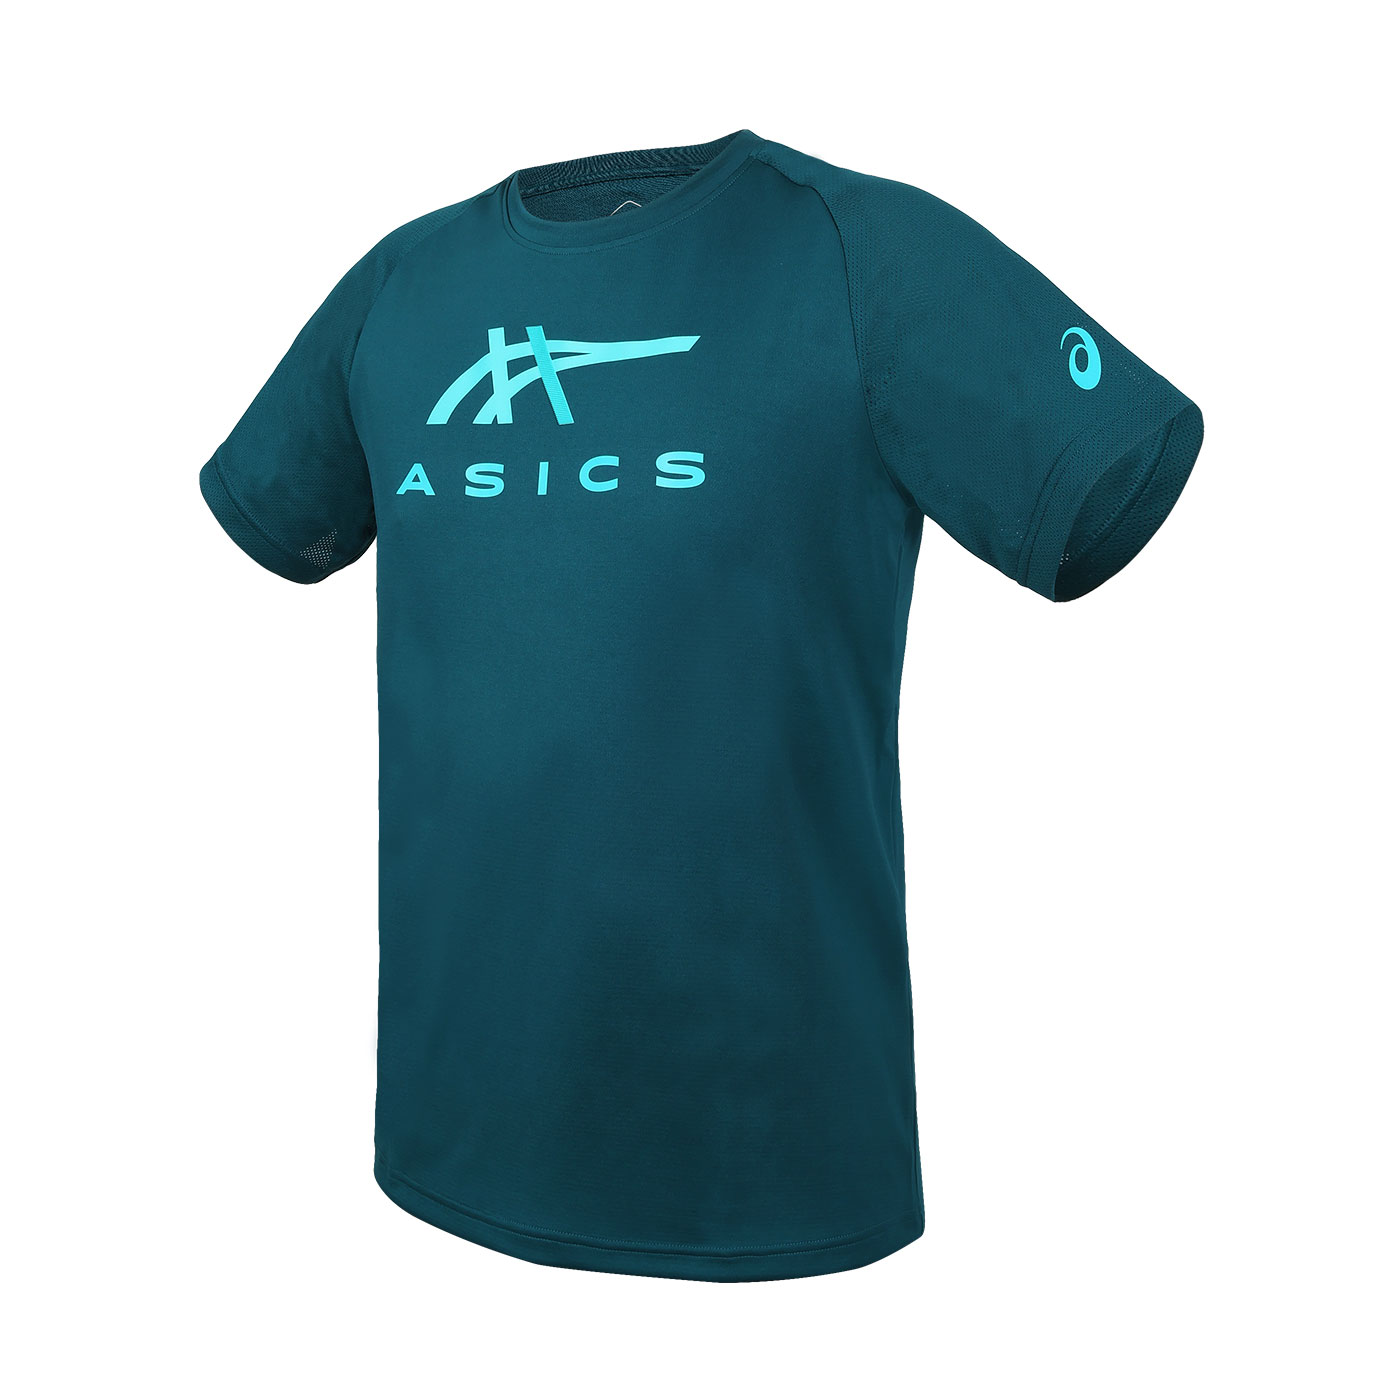 ASICS 男款短袖T恤  2031E781-300 - 深綠淺綠